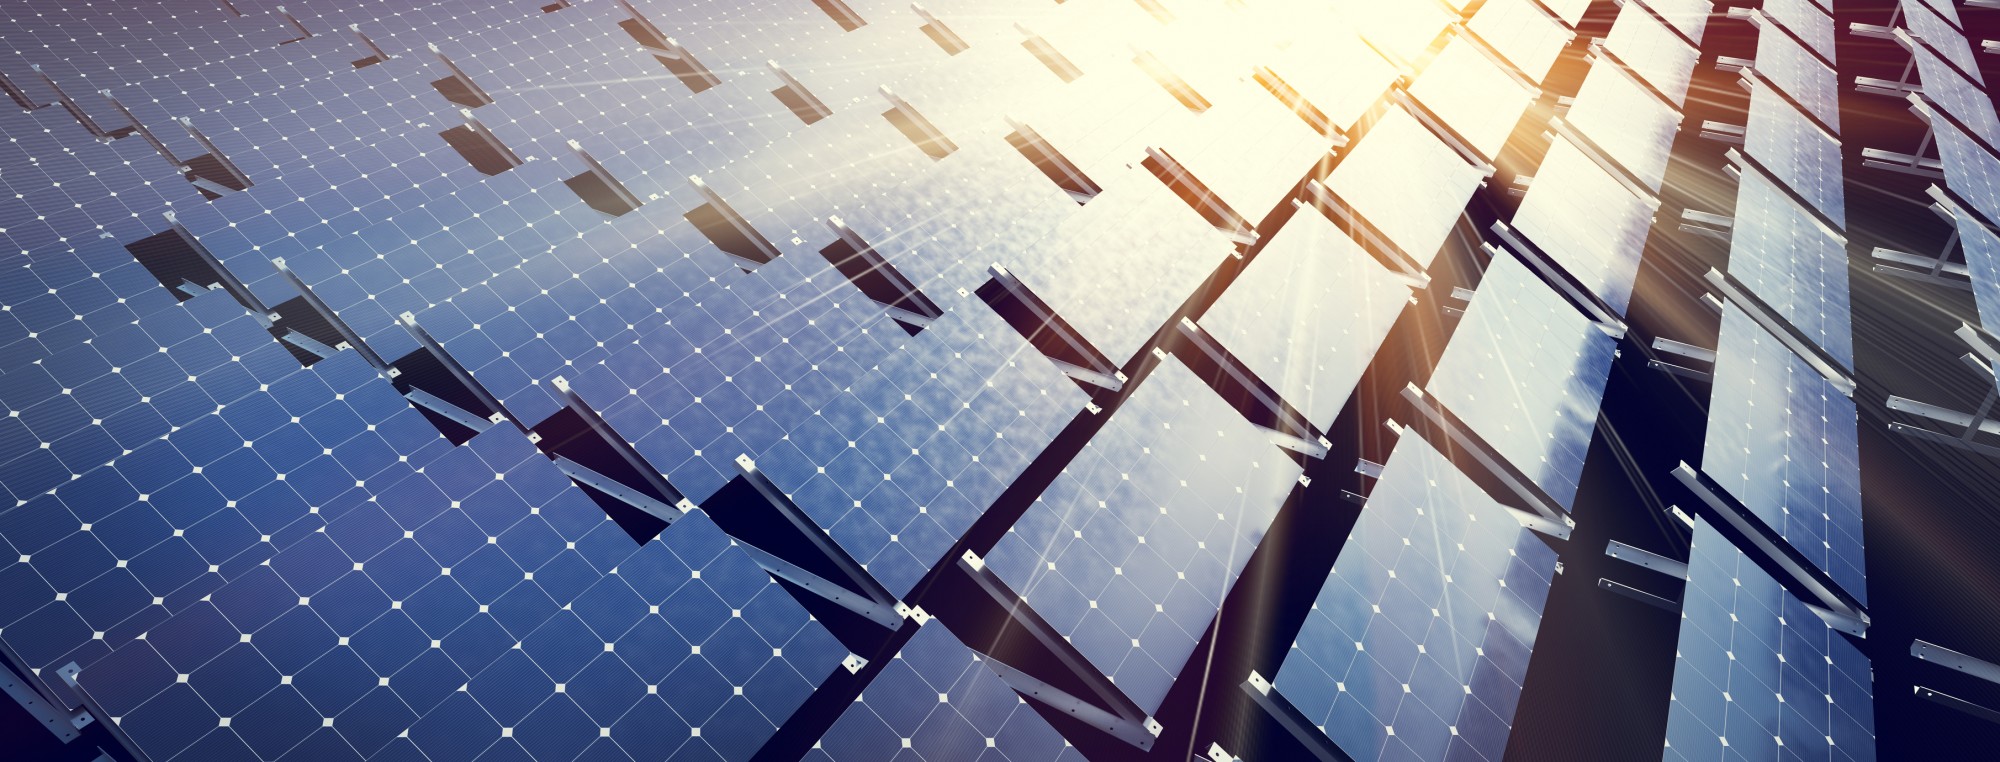 Houston Installs Sustainable, Solar Art